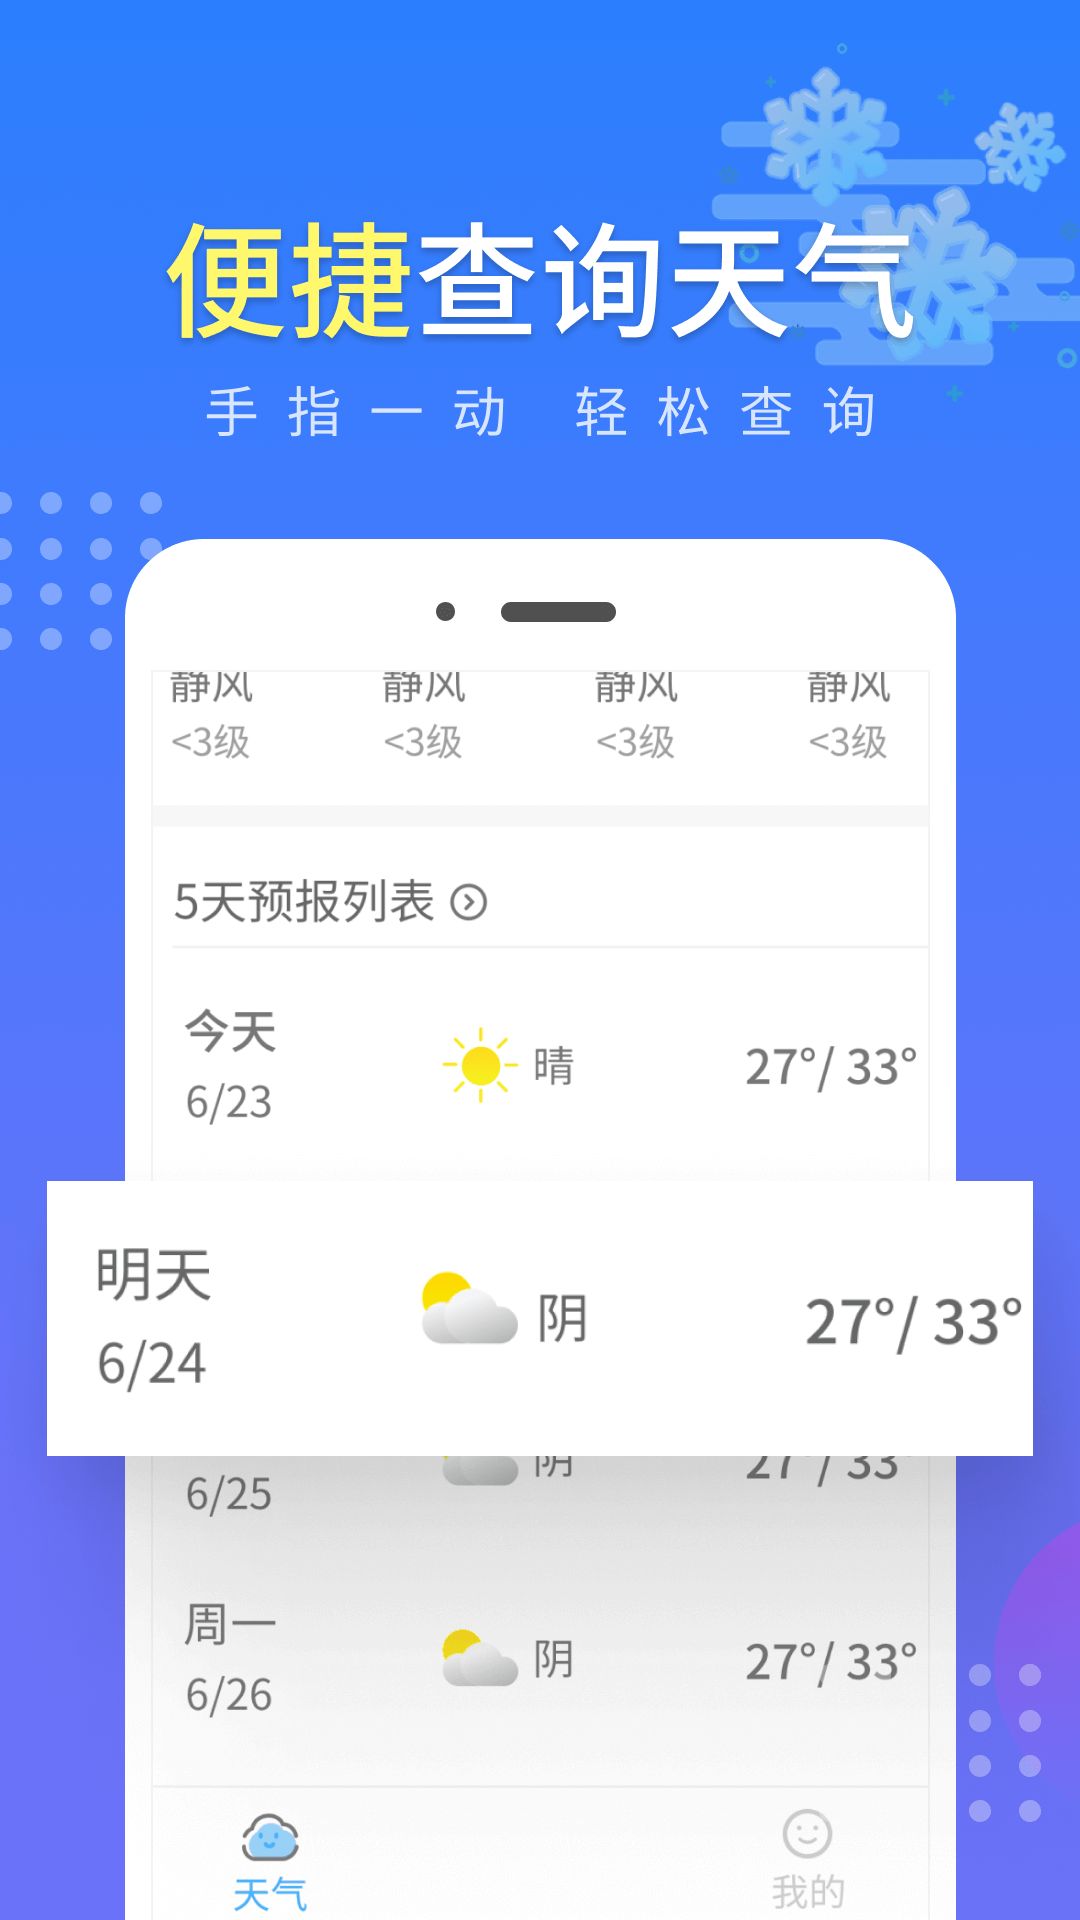 晴朗气象通app图3